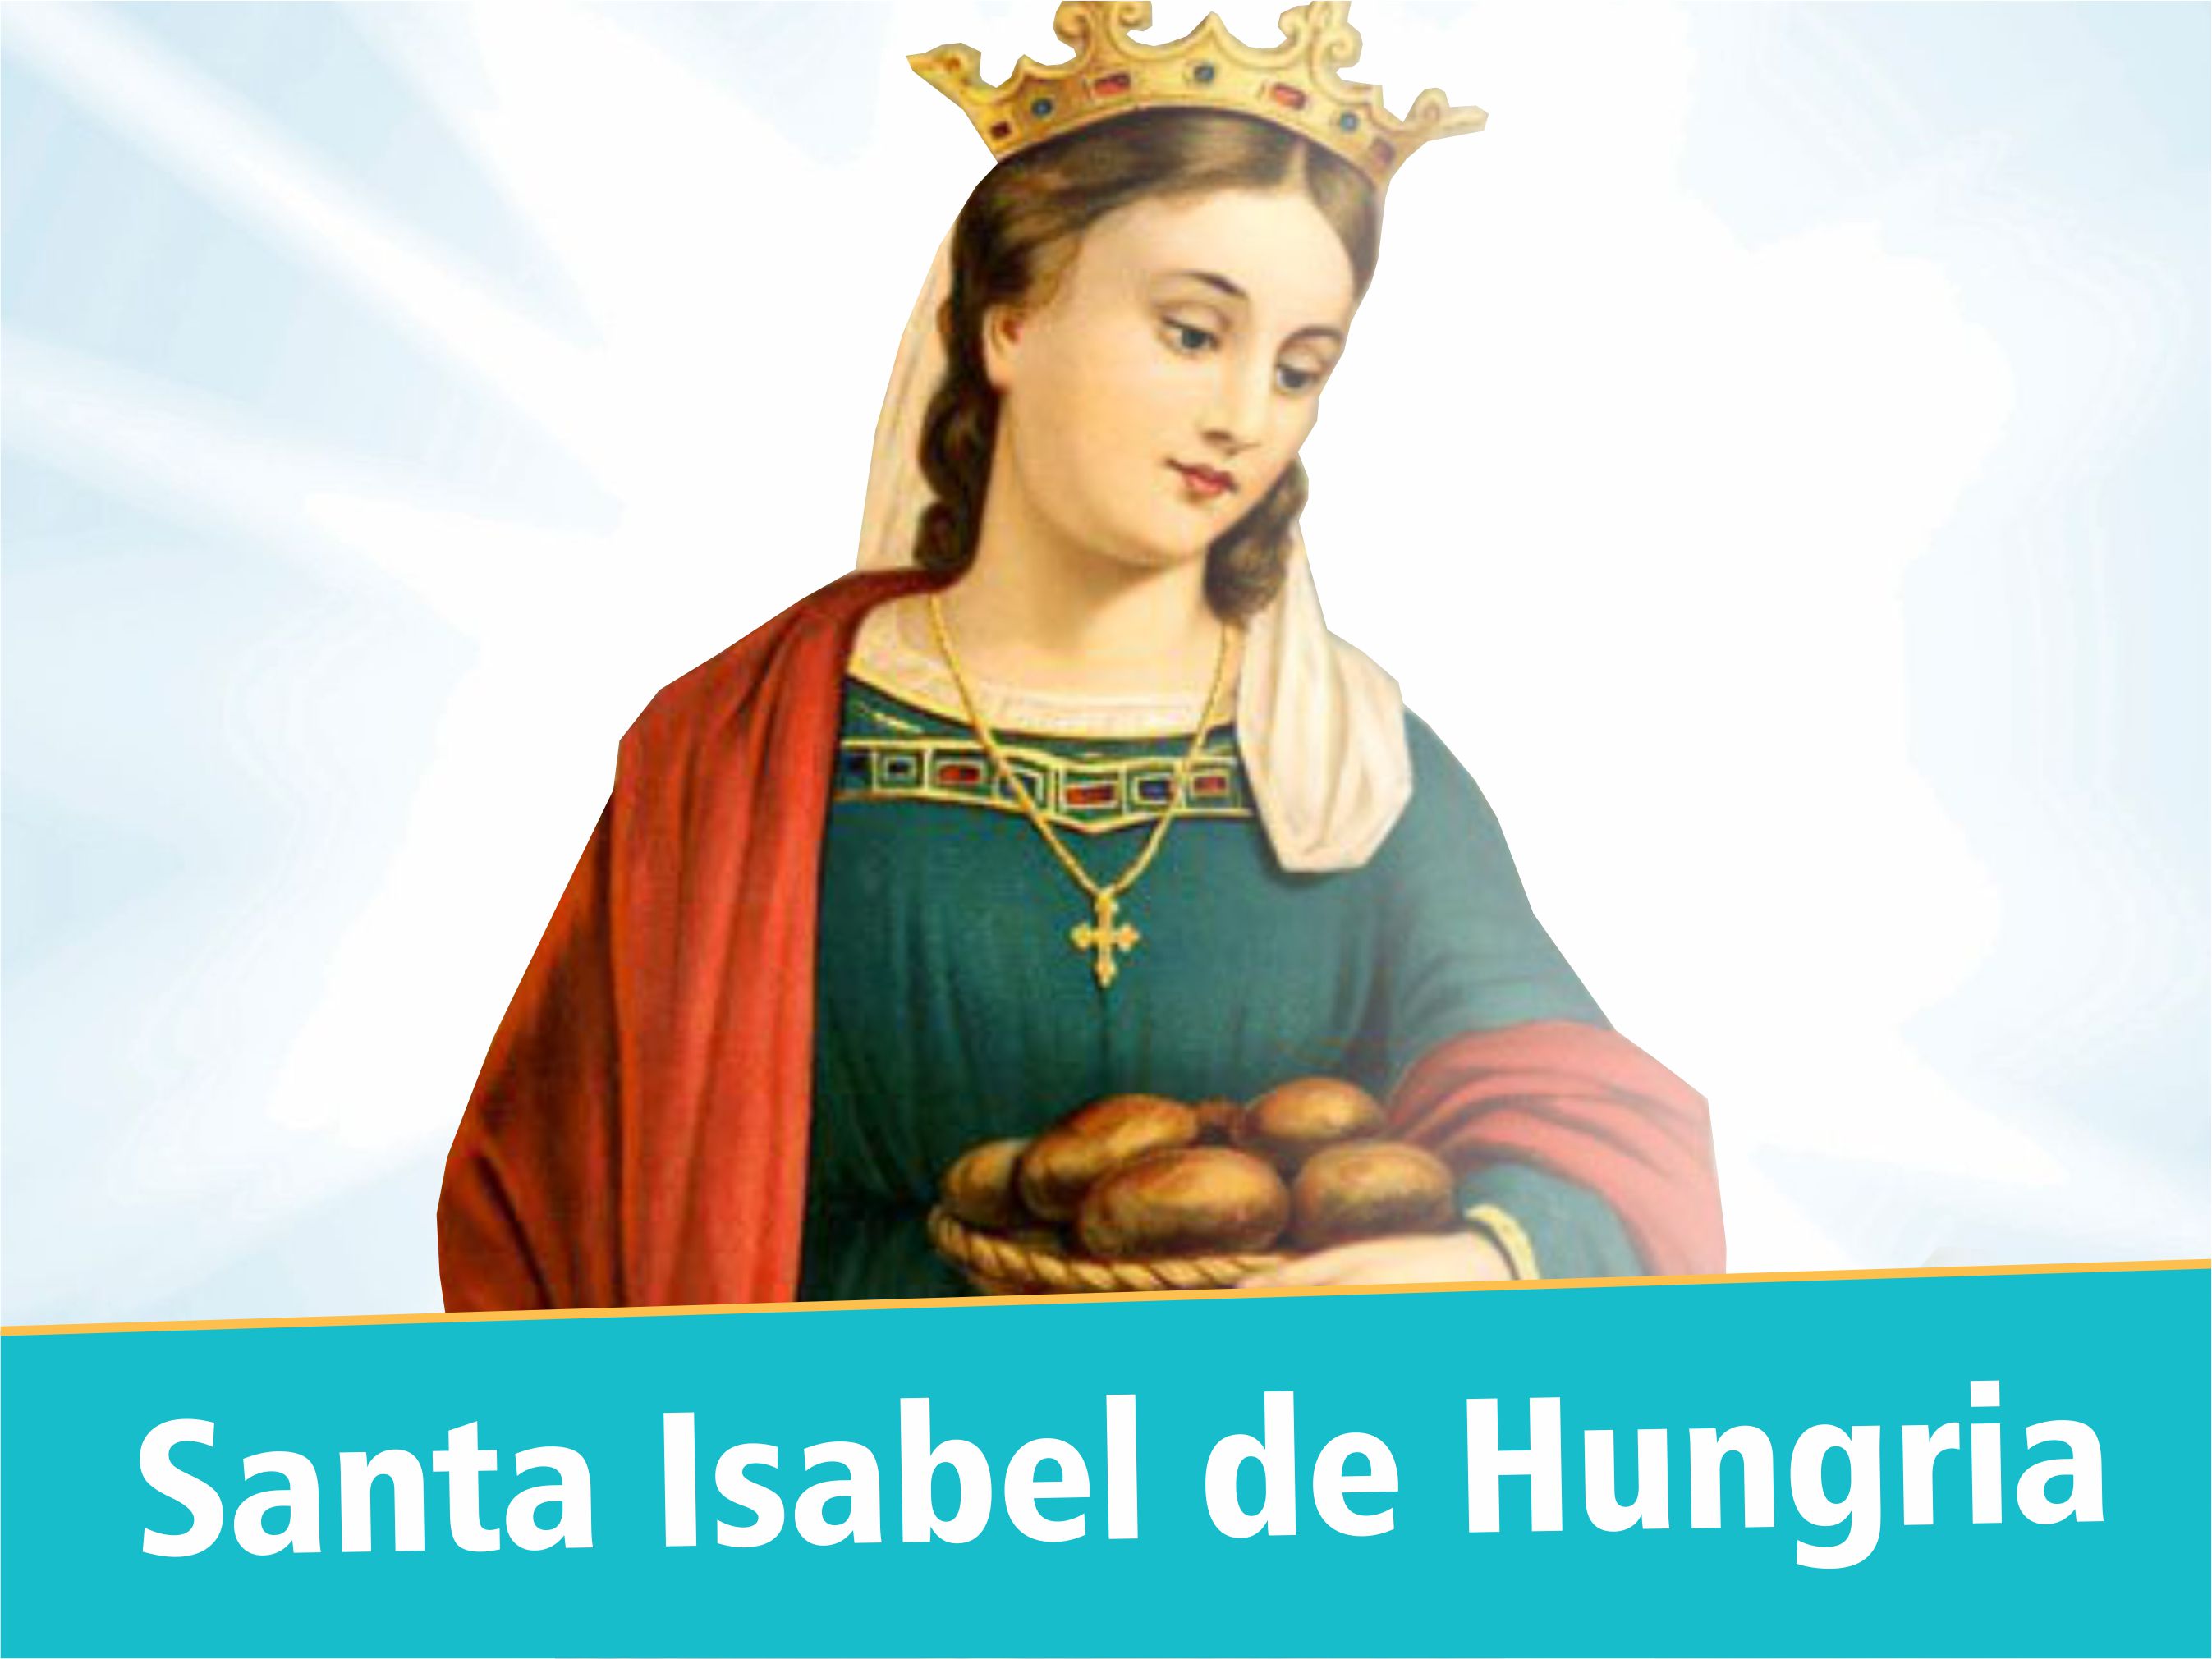 Santa Isabel da Hungria